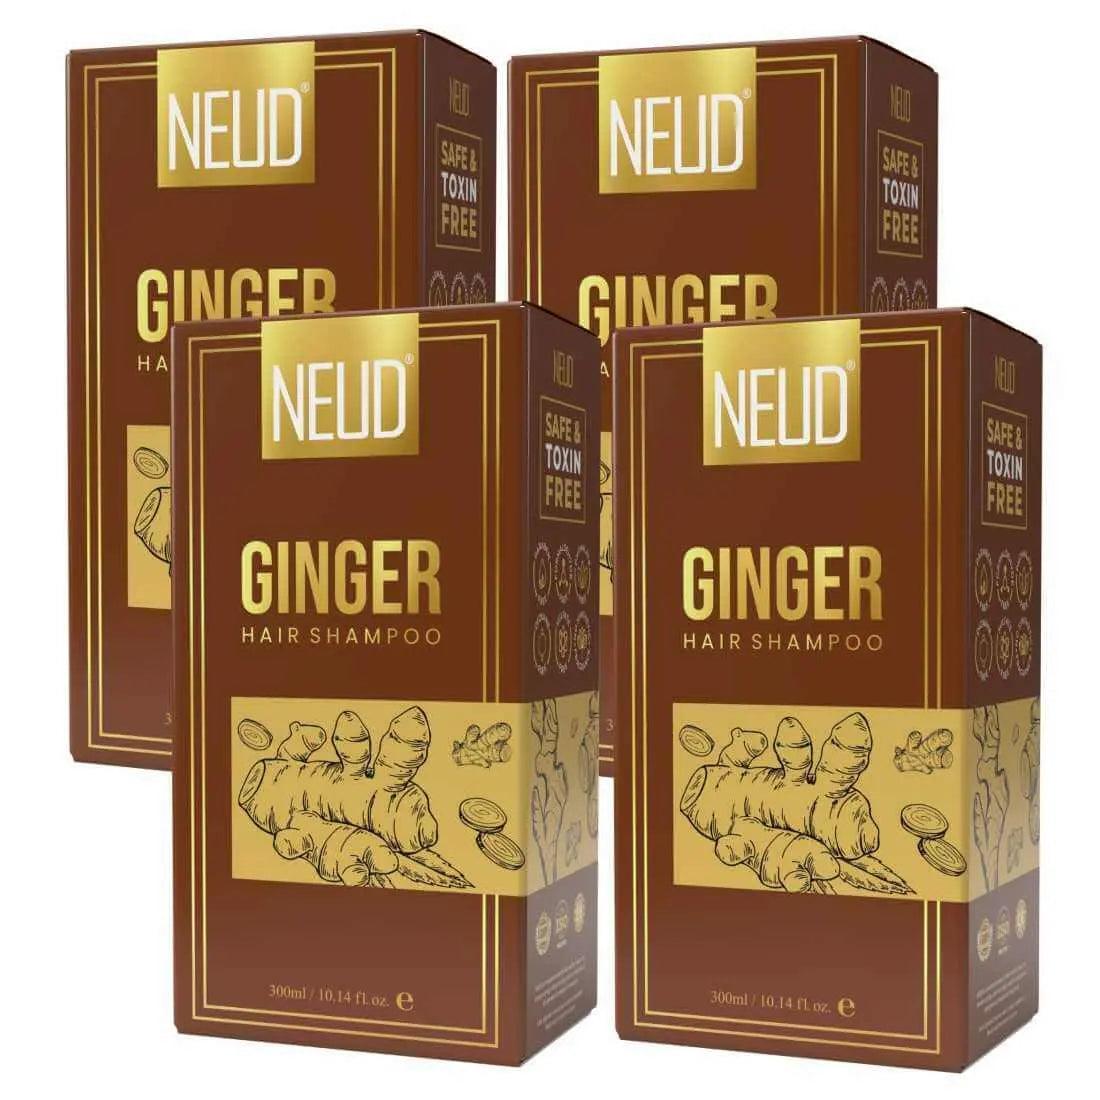 NEUD Ginger Hair Shampoo for Men & Women - 300 ml 9559682307262